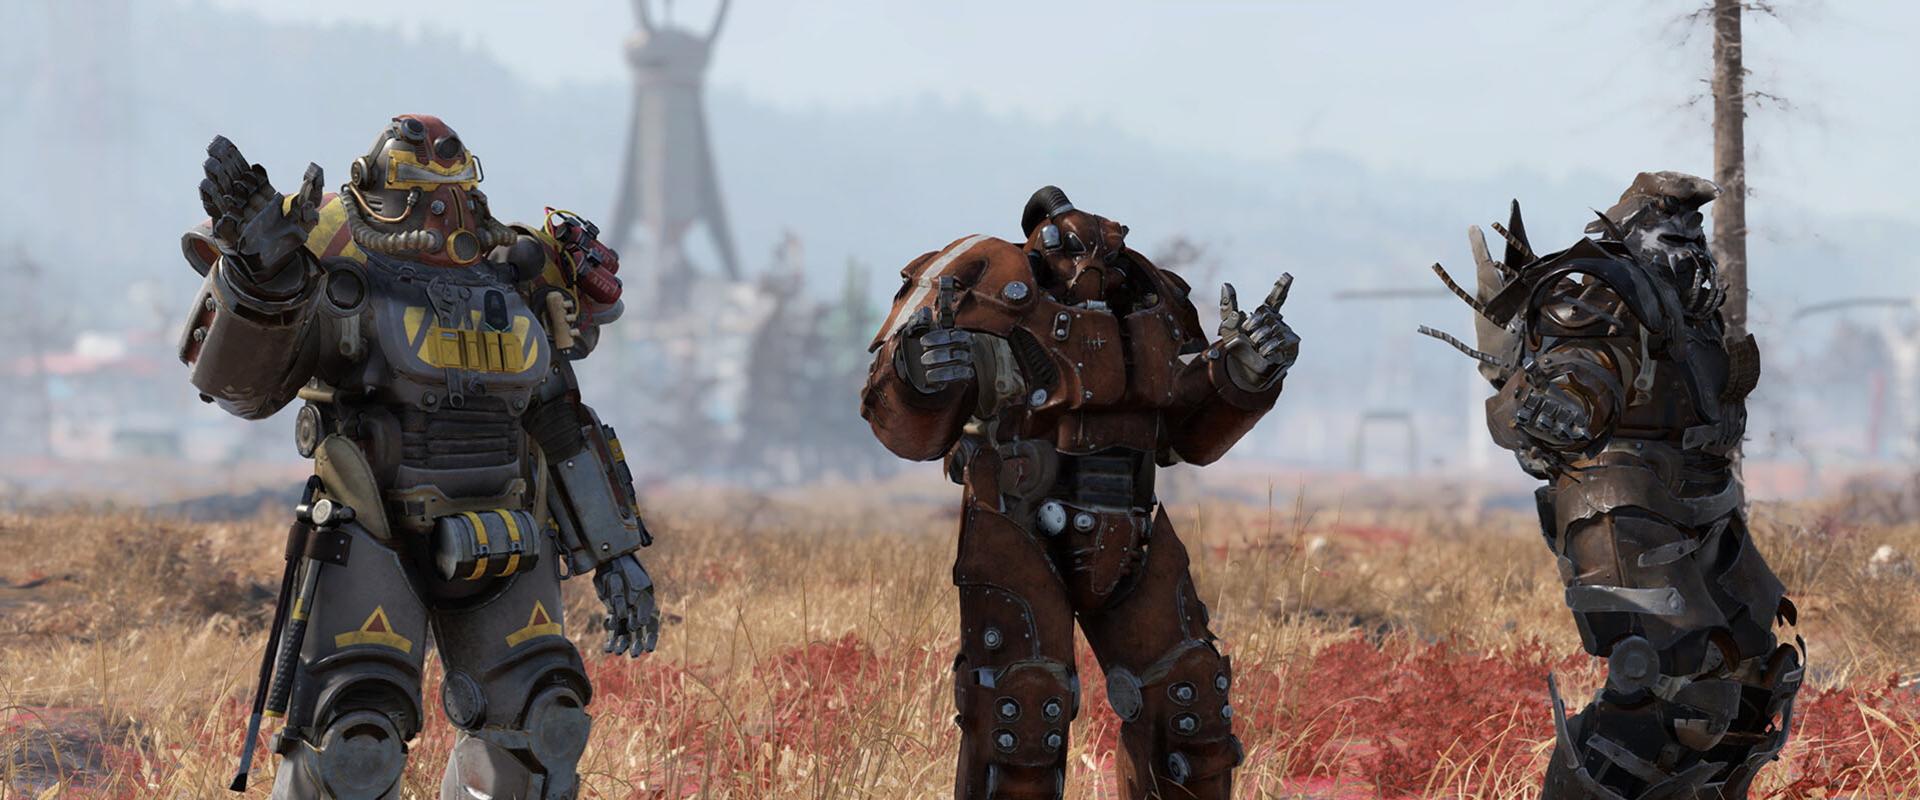 Akkora siker a Fallout sorozat, hogy már hamarabb akar Fallout 5-öt készíteni az Xbox